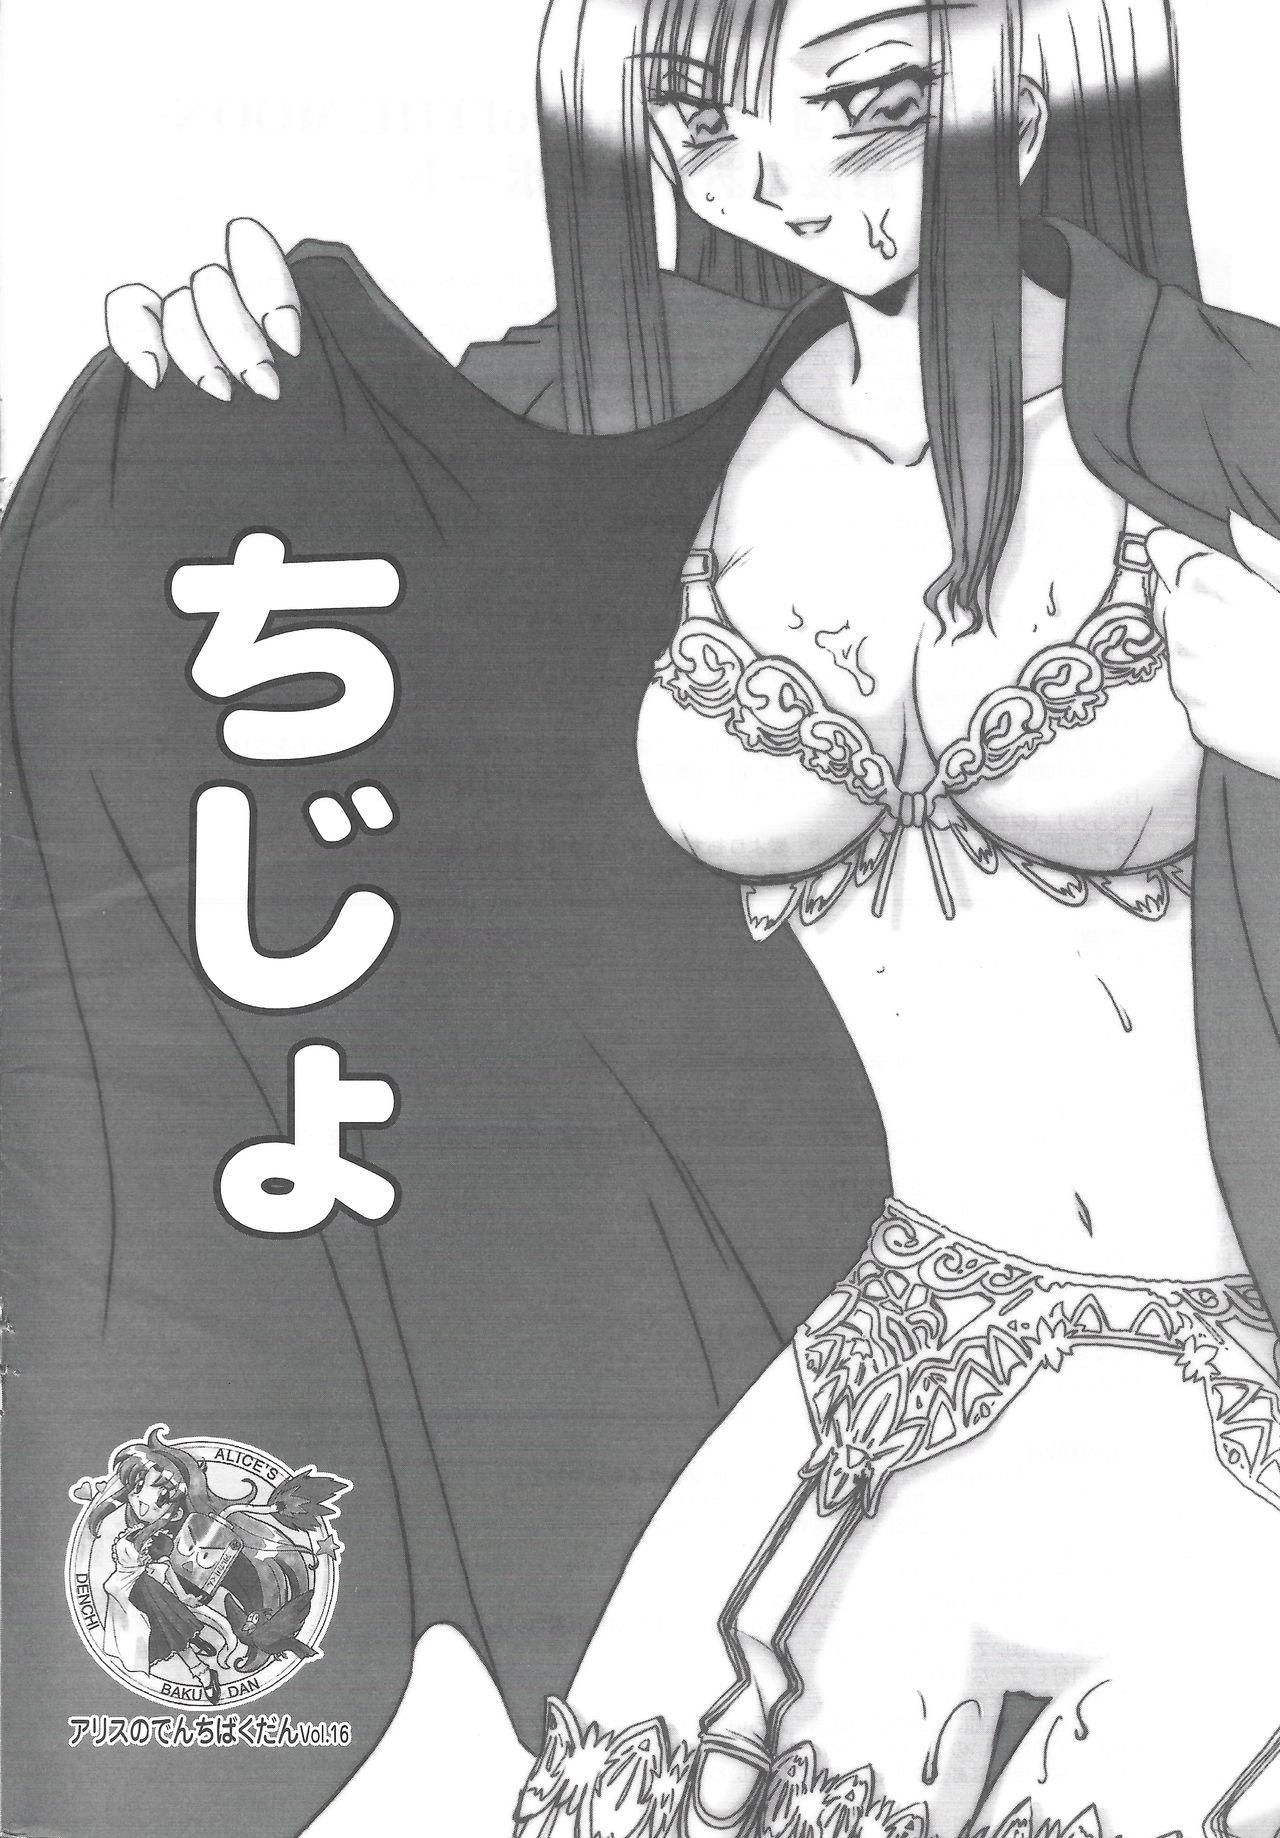 Arisu no Denchi Bakudan Vol. 16 0